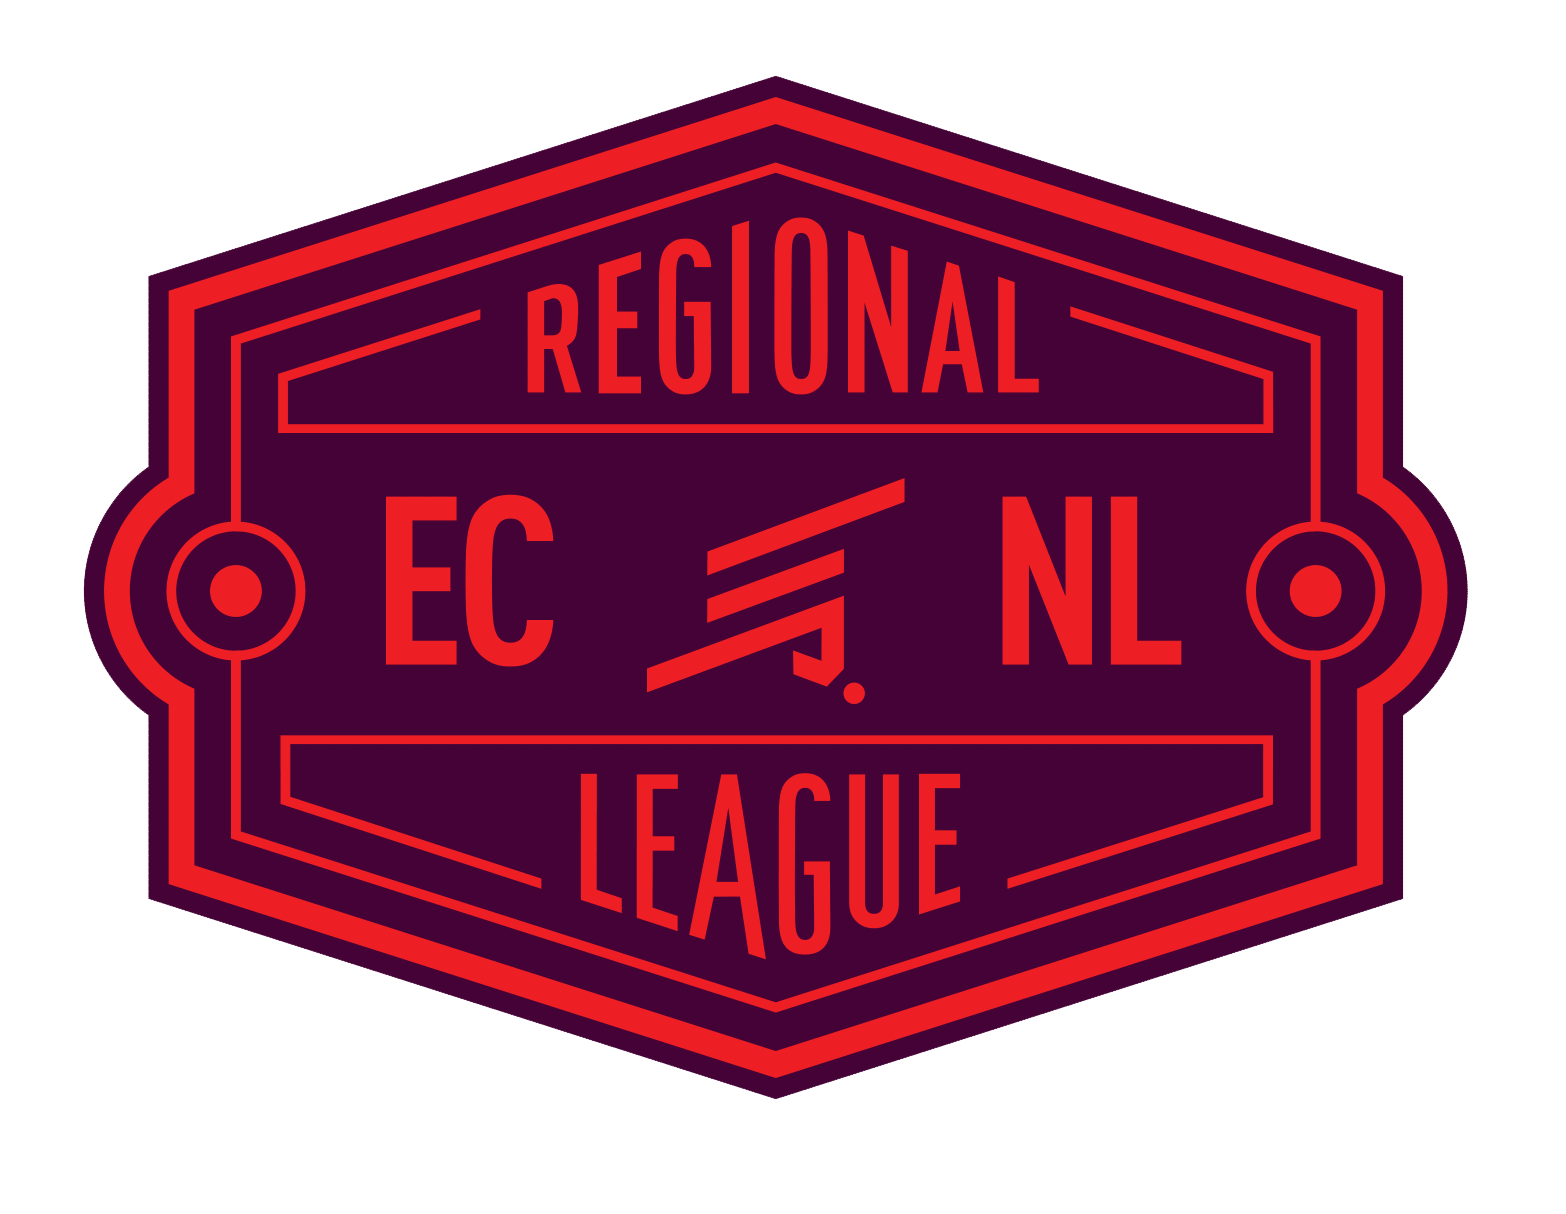 ECNL Girls Regional League